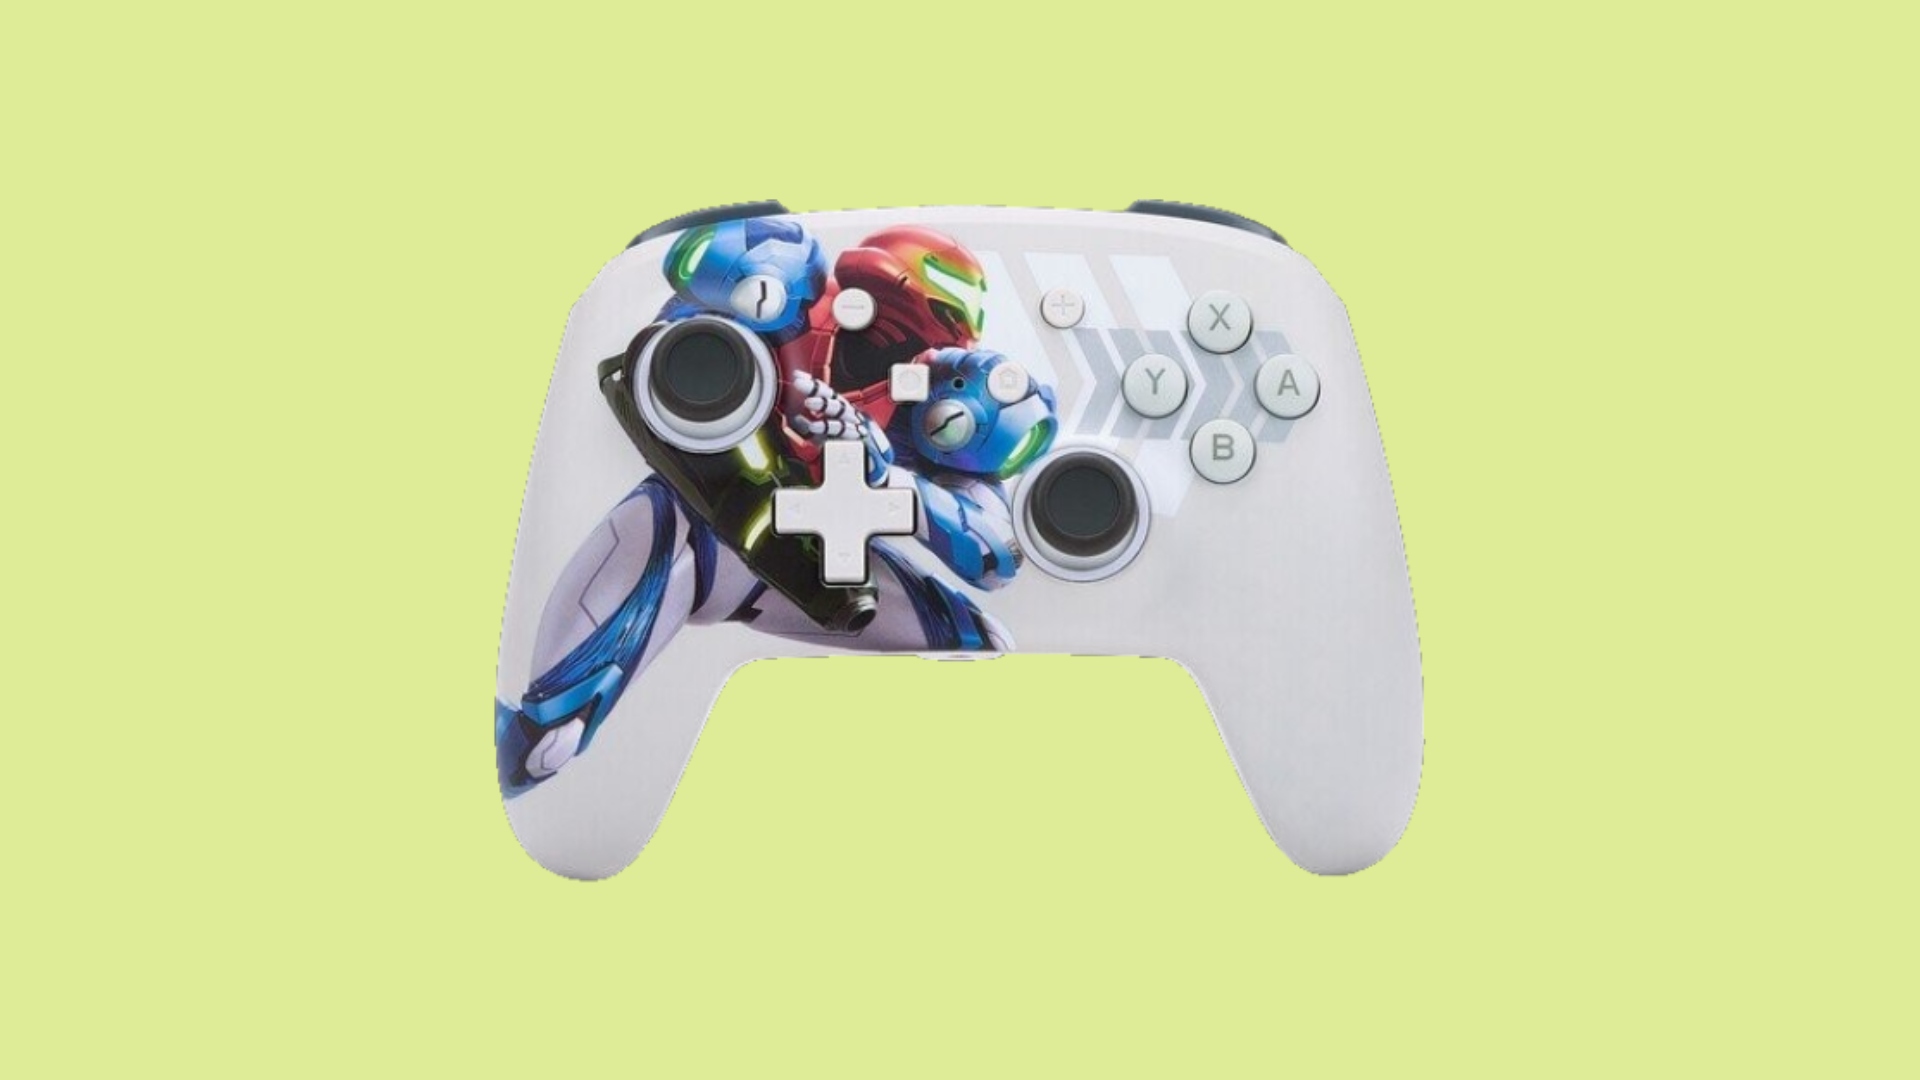 ベスト Nintendo Switch コントローラー - 画像はメトロイド ドレッドのアートワークをフィーチャーしたコントローラーを示しています。